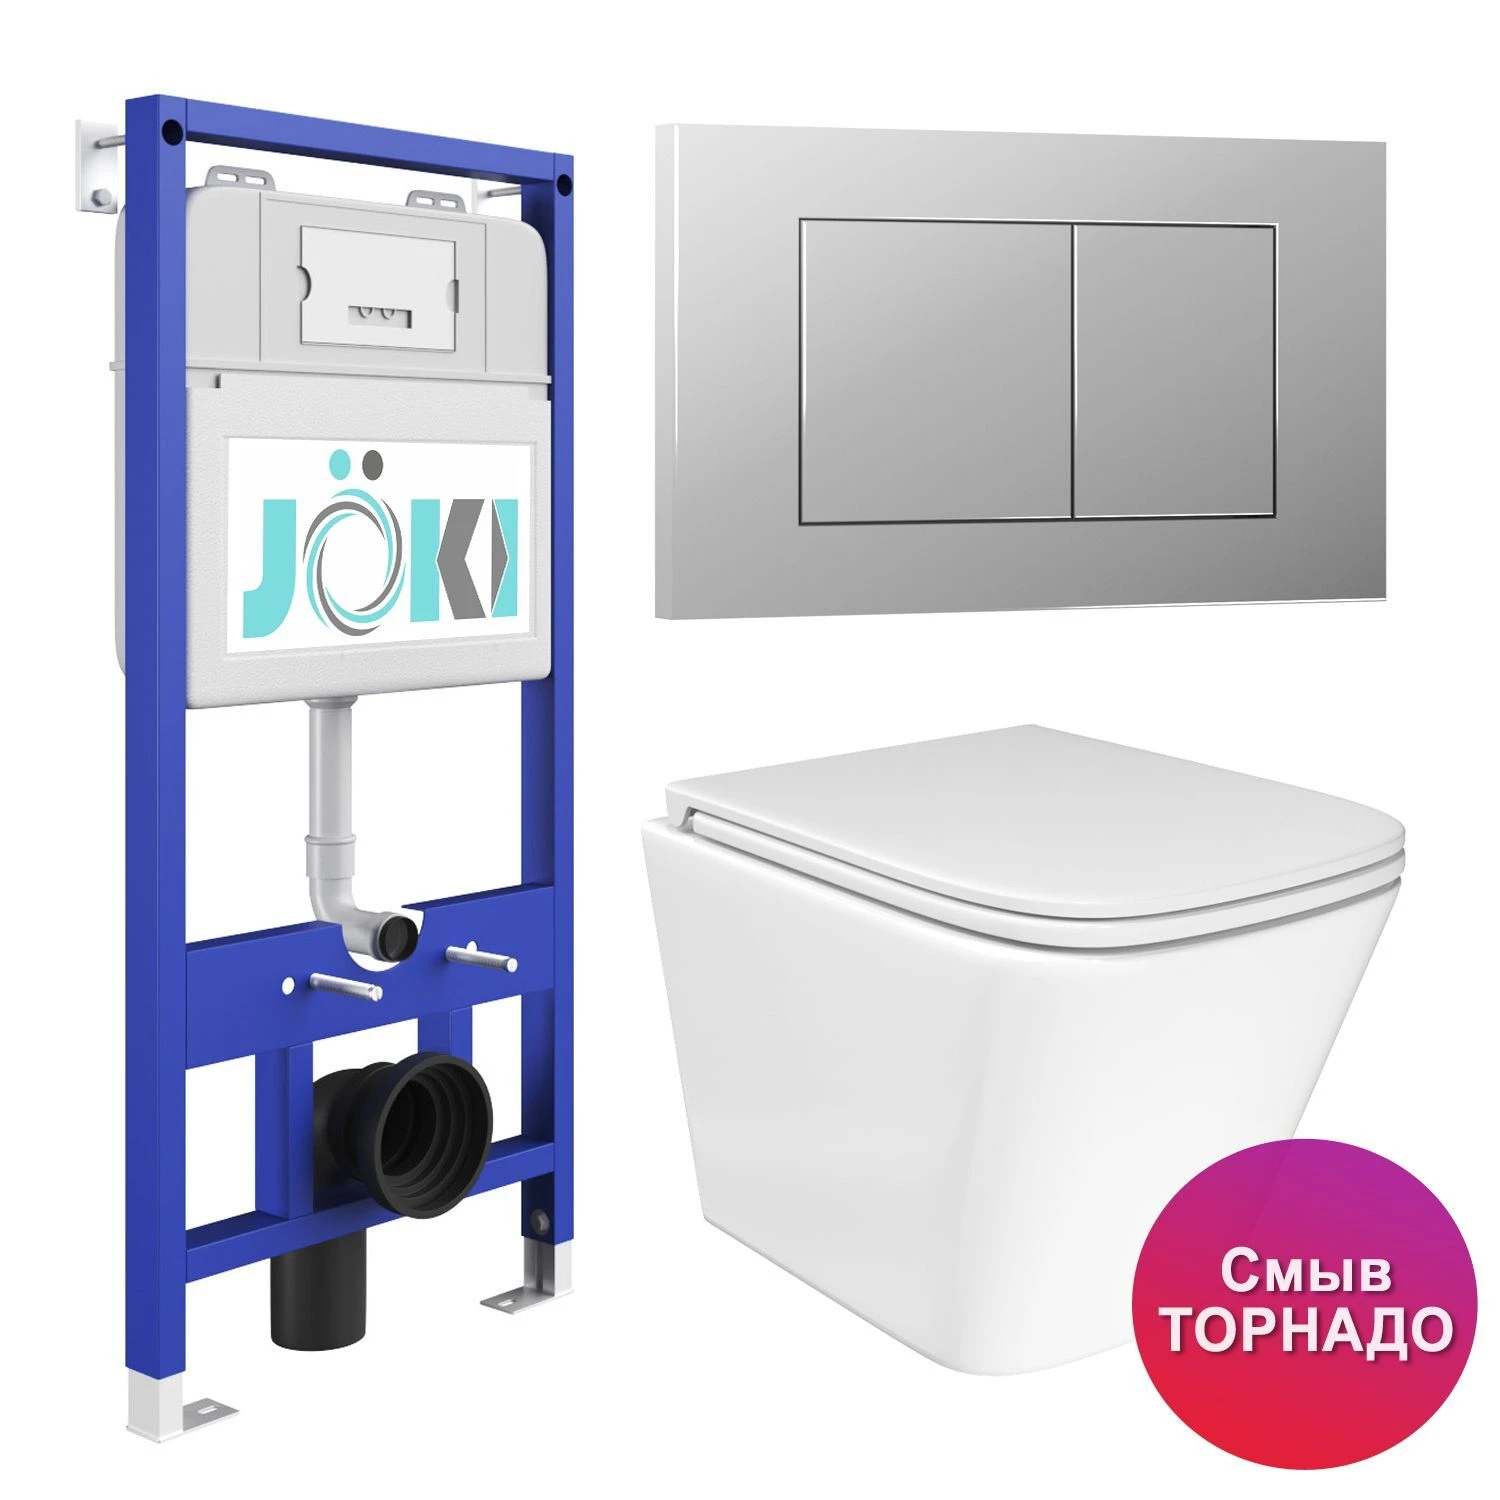 Комплект: JOKI Инсталляция JK01150+Кнопка JK012519CH хром+Verna T JK3031025 белый унитаз, смыв Торнадо